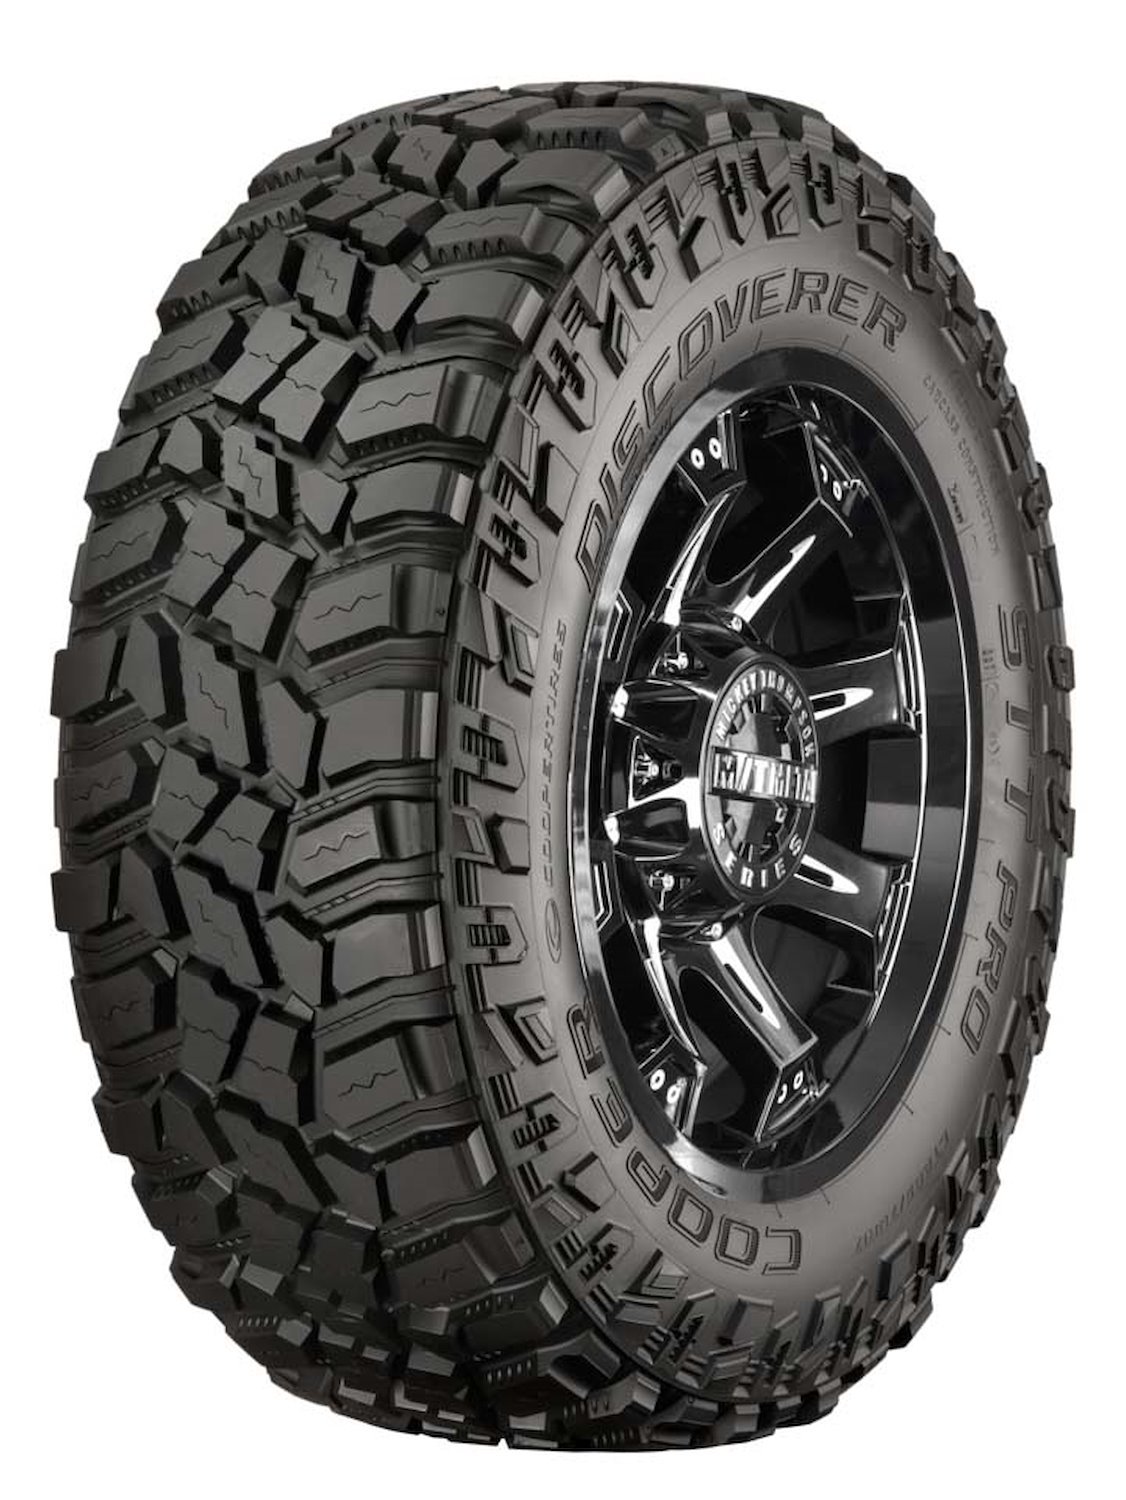 Discoverer STT PRO All-Terrain Tire, 35X12.50R22LT